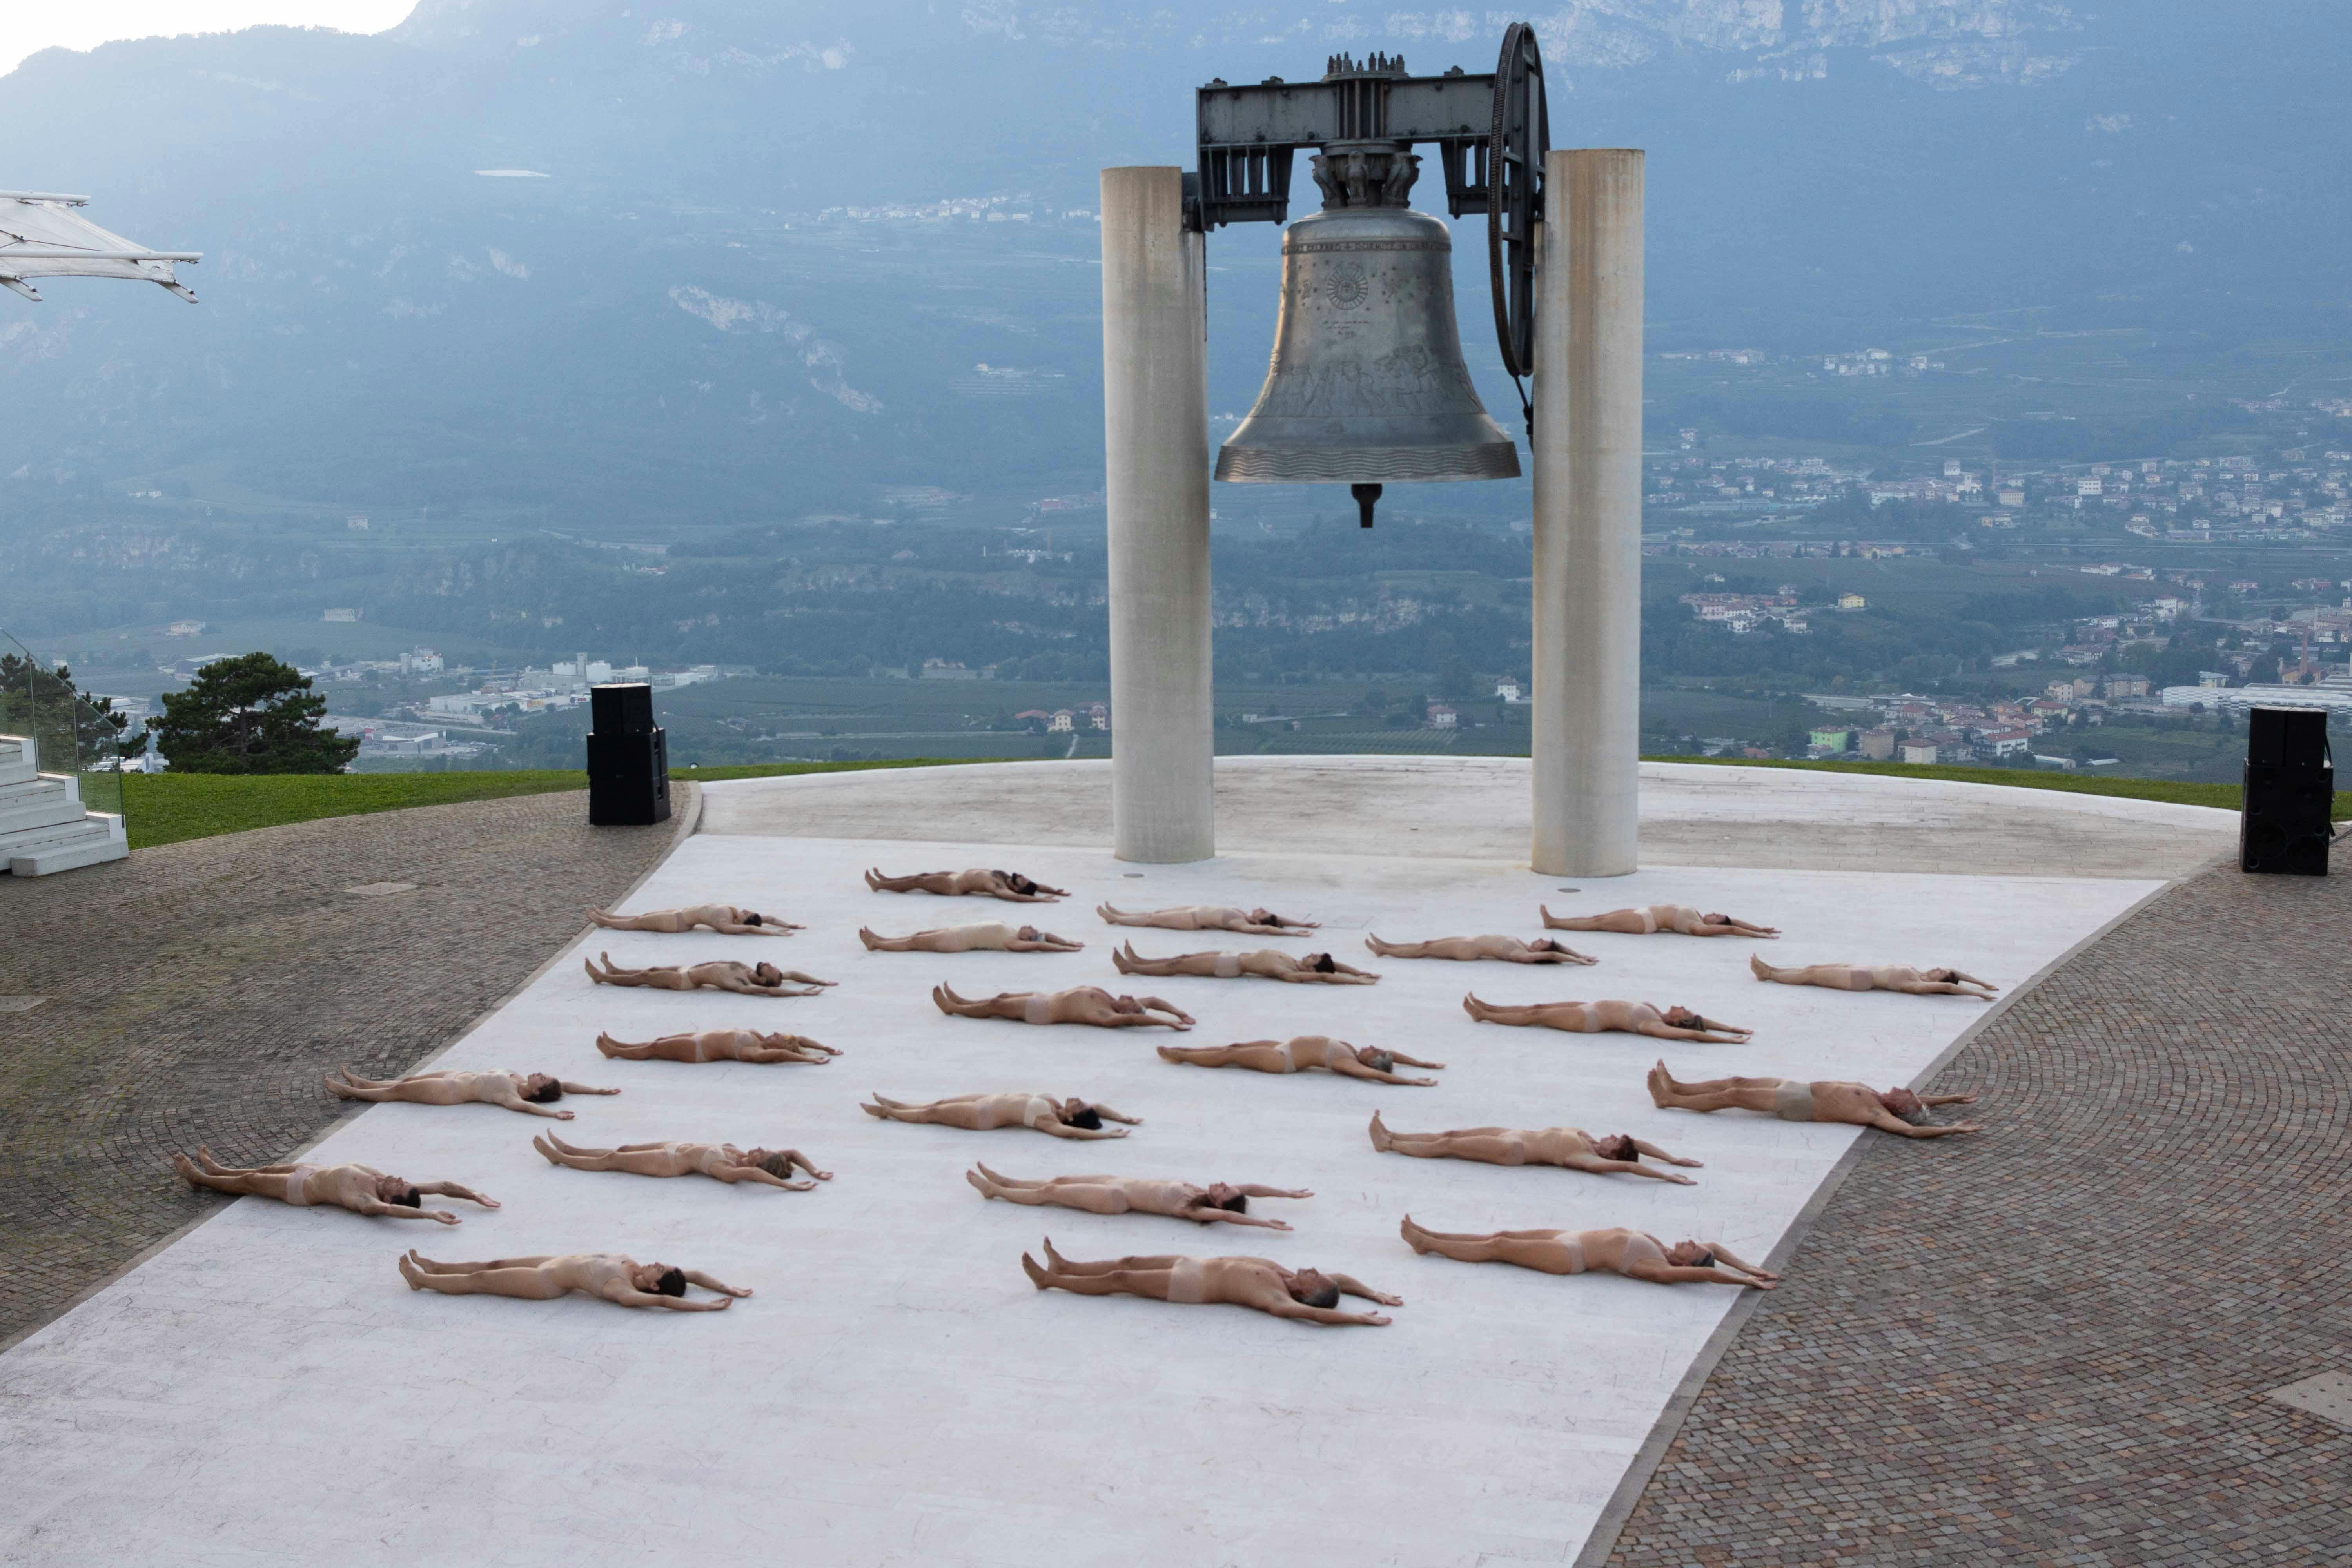 Alla base della Campana dei Caduti di Rovereto, numerosi corpi umani sono sdraiati a terra, rivolti verso l'alto, nudi. La loro disposizione nello spazio è ordinata.